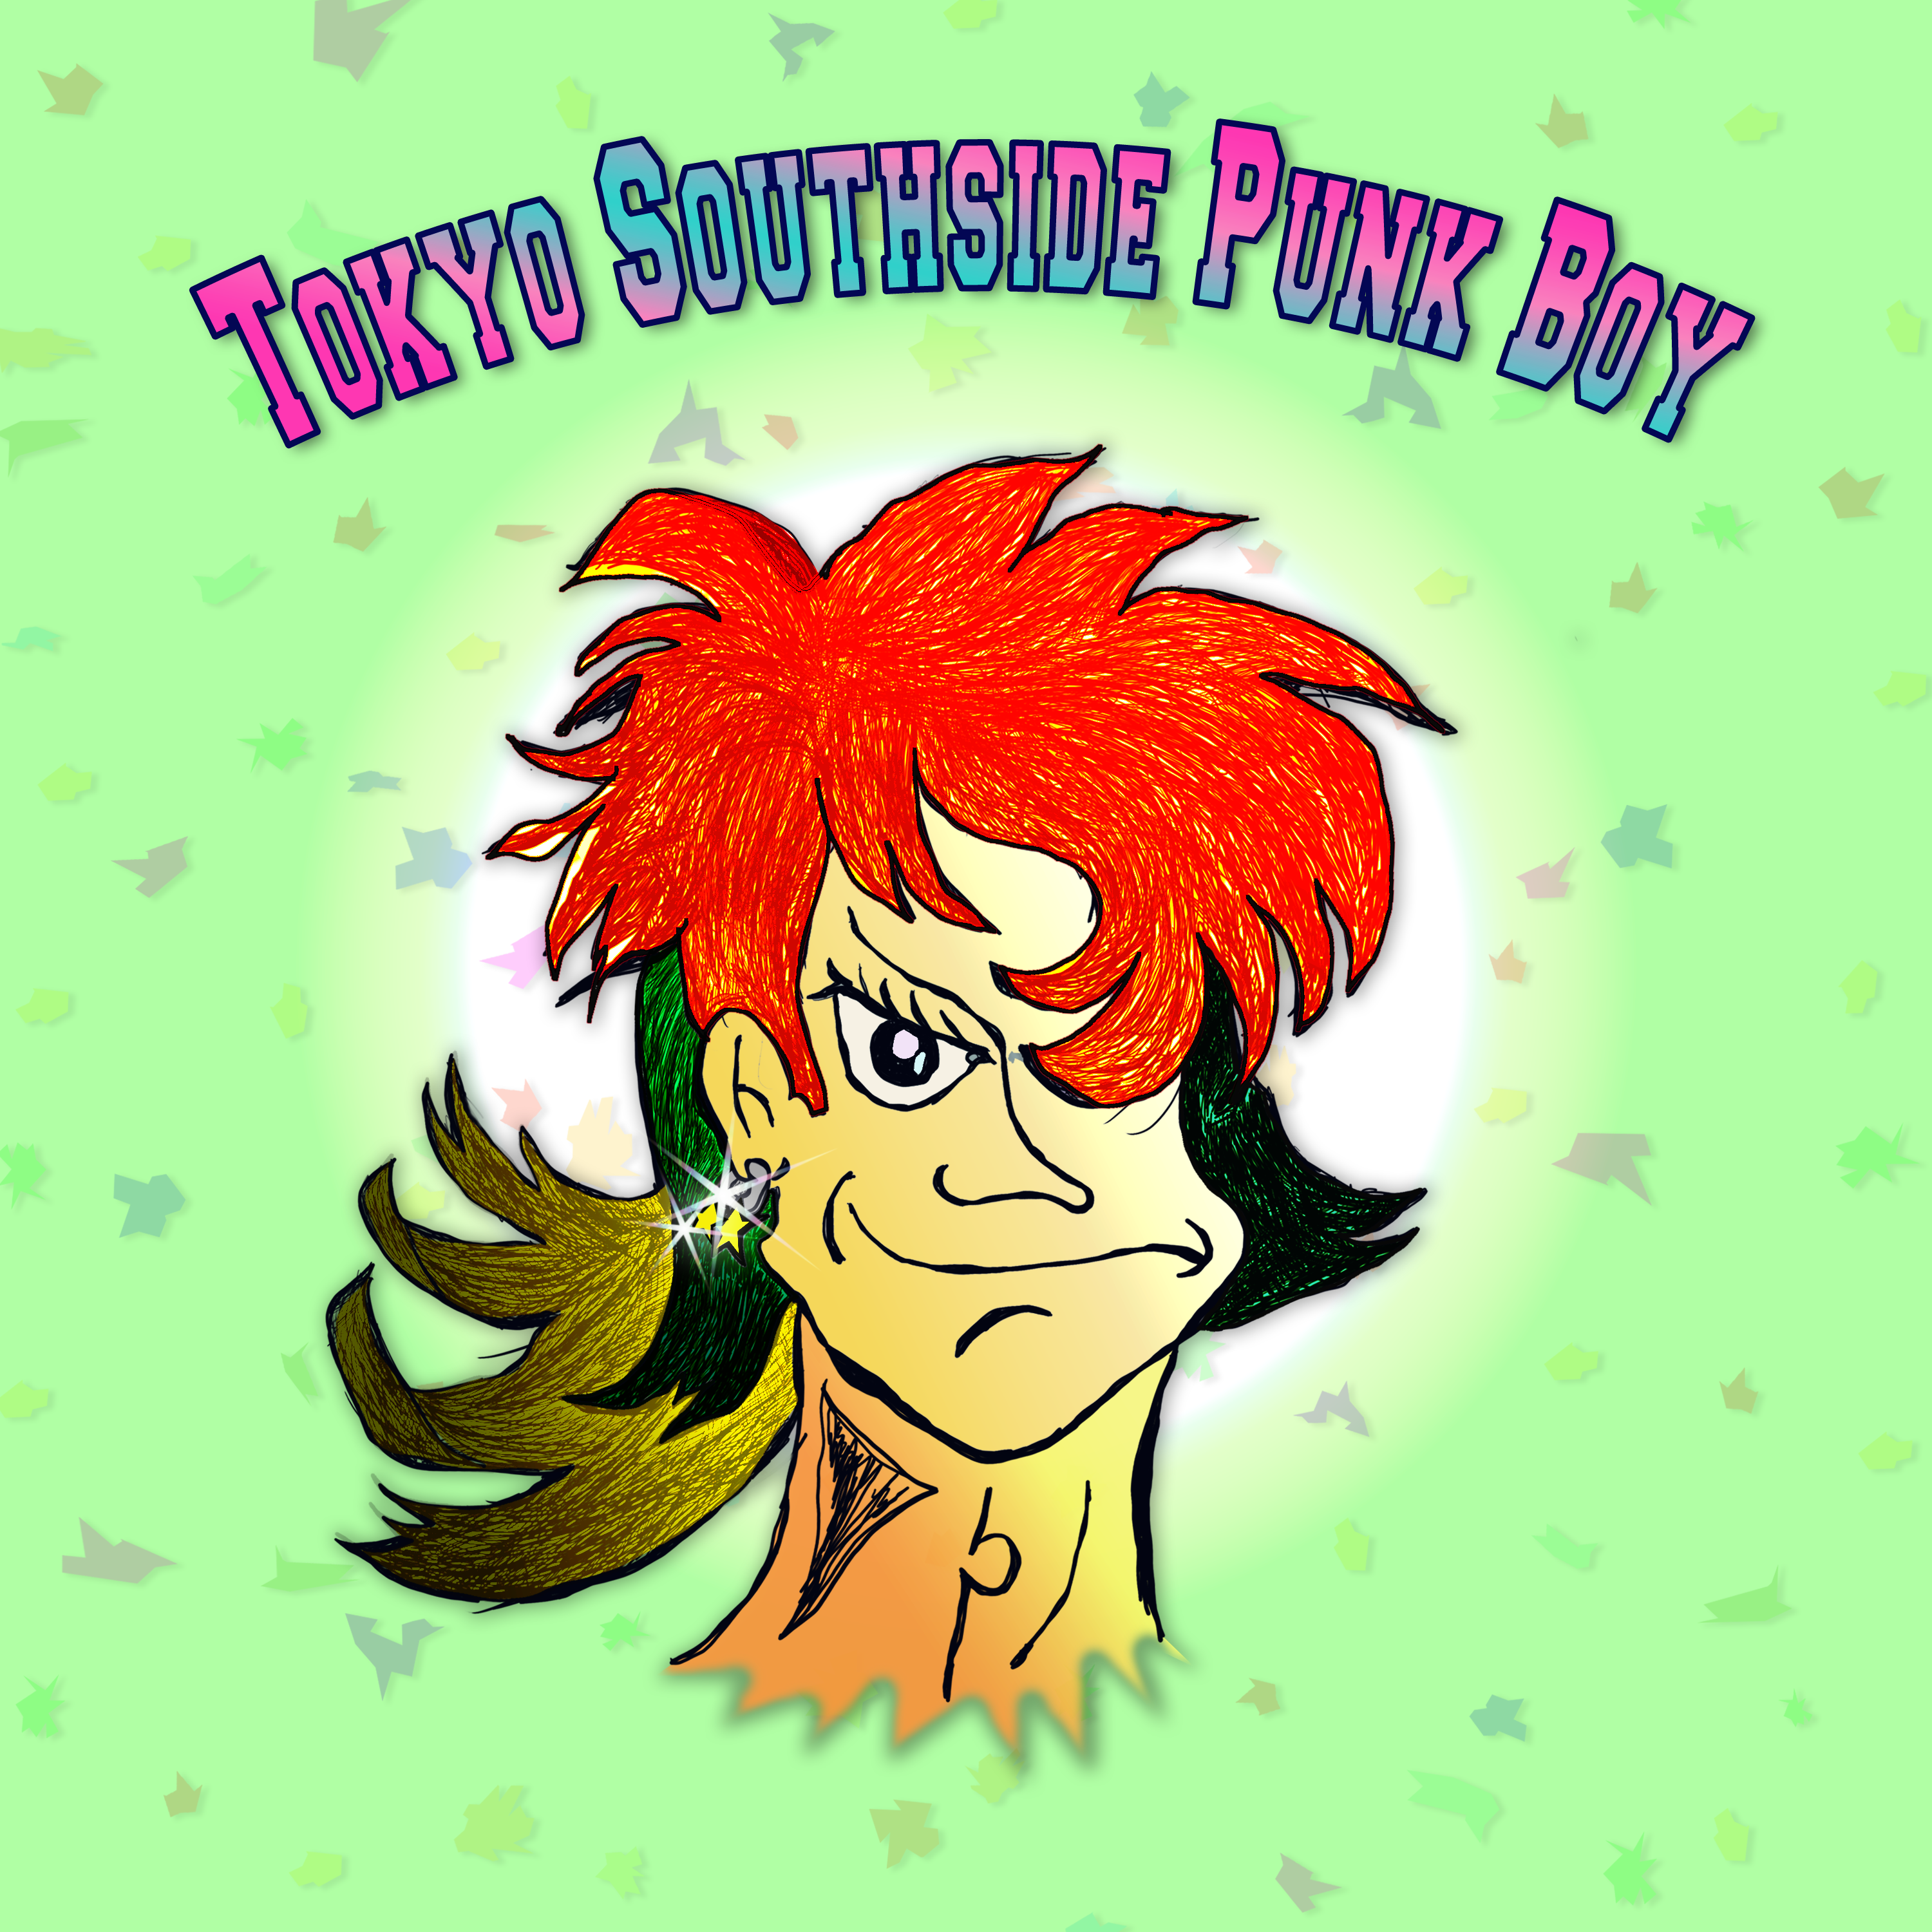 Tokyo Southside Punk Boy_#2